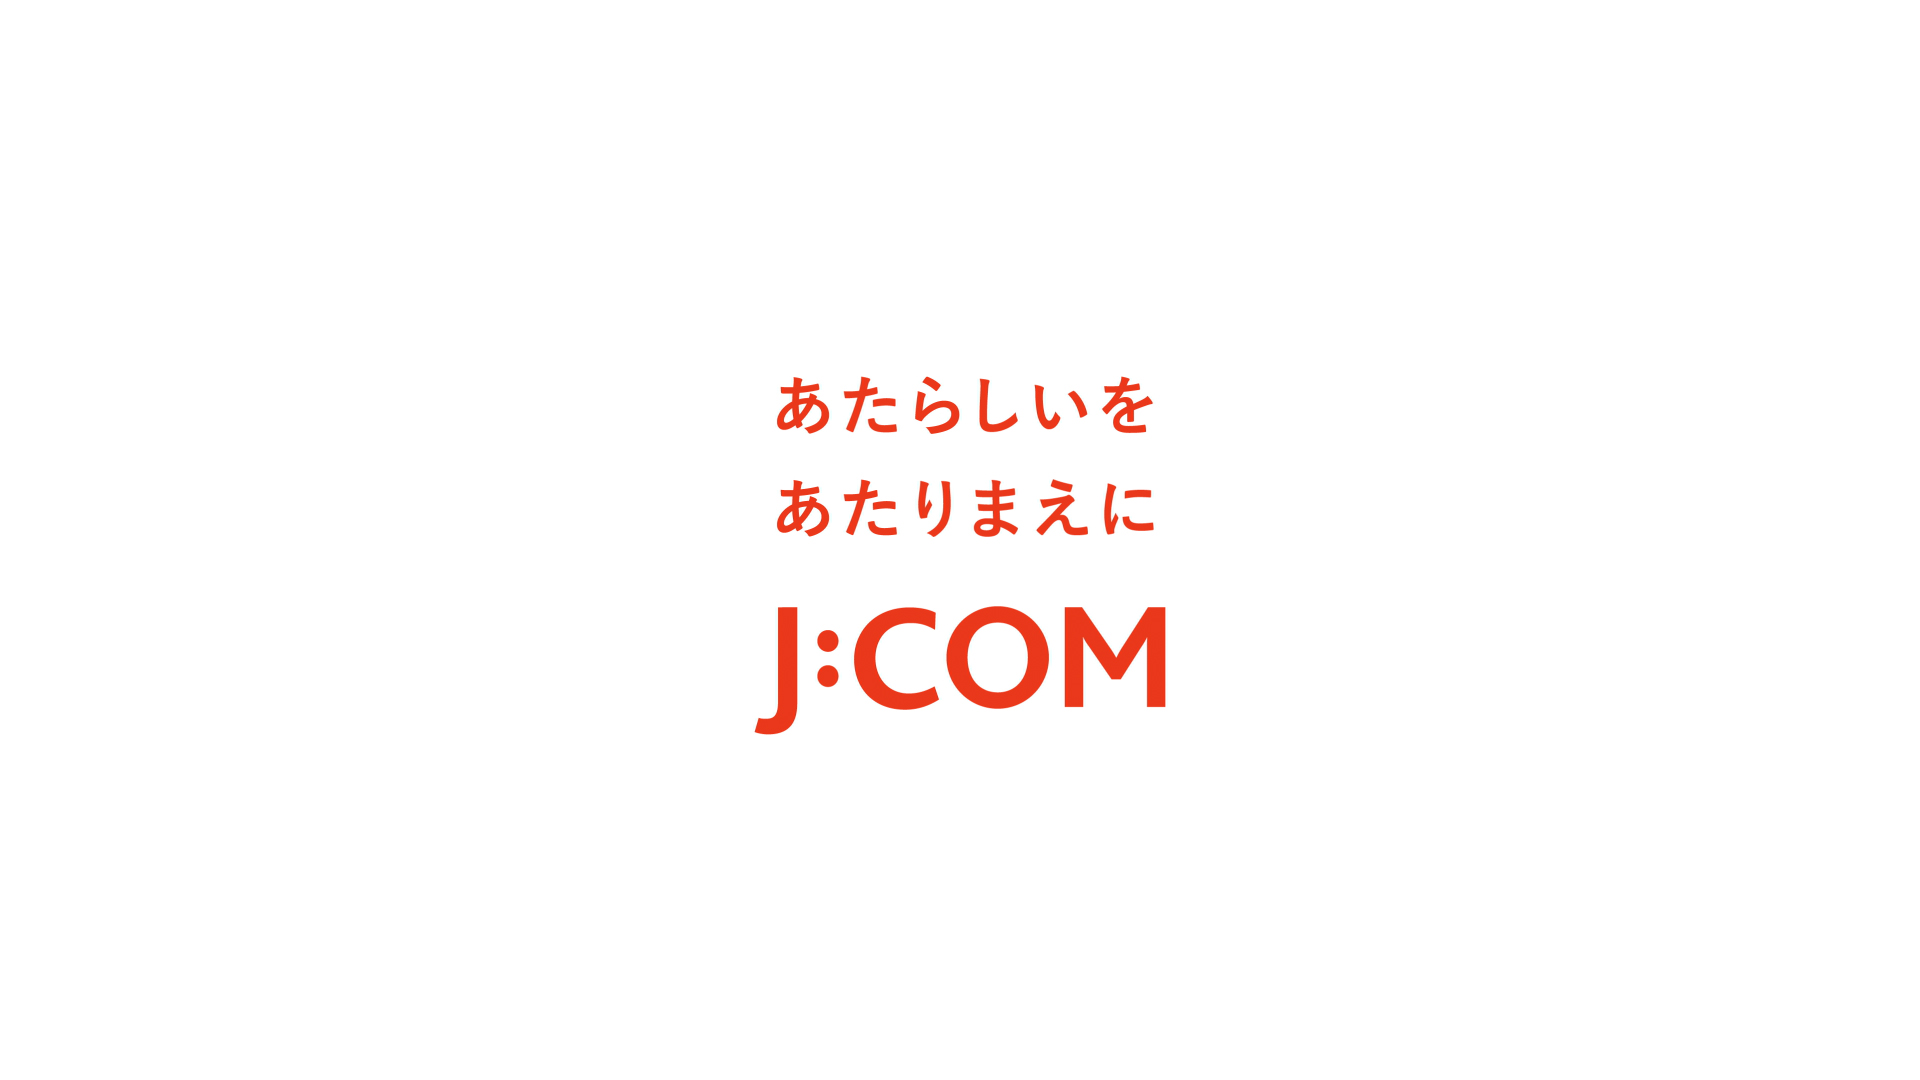 J:COM -MotionLogo-